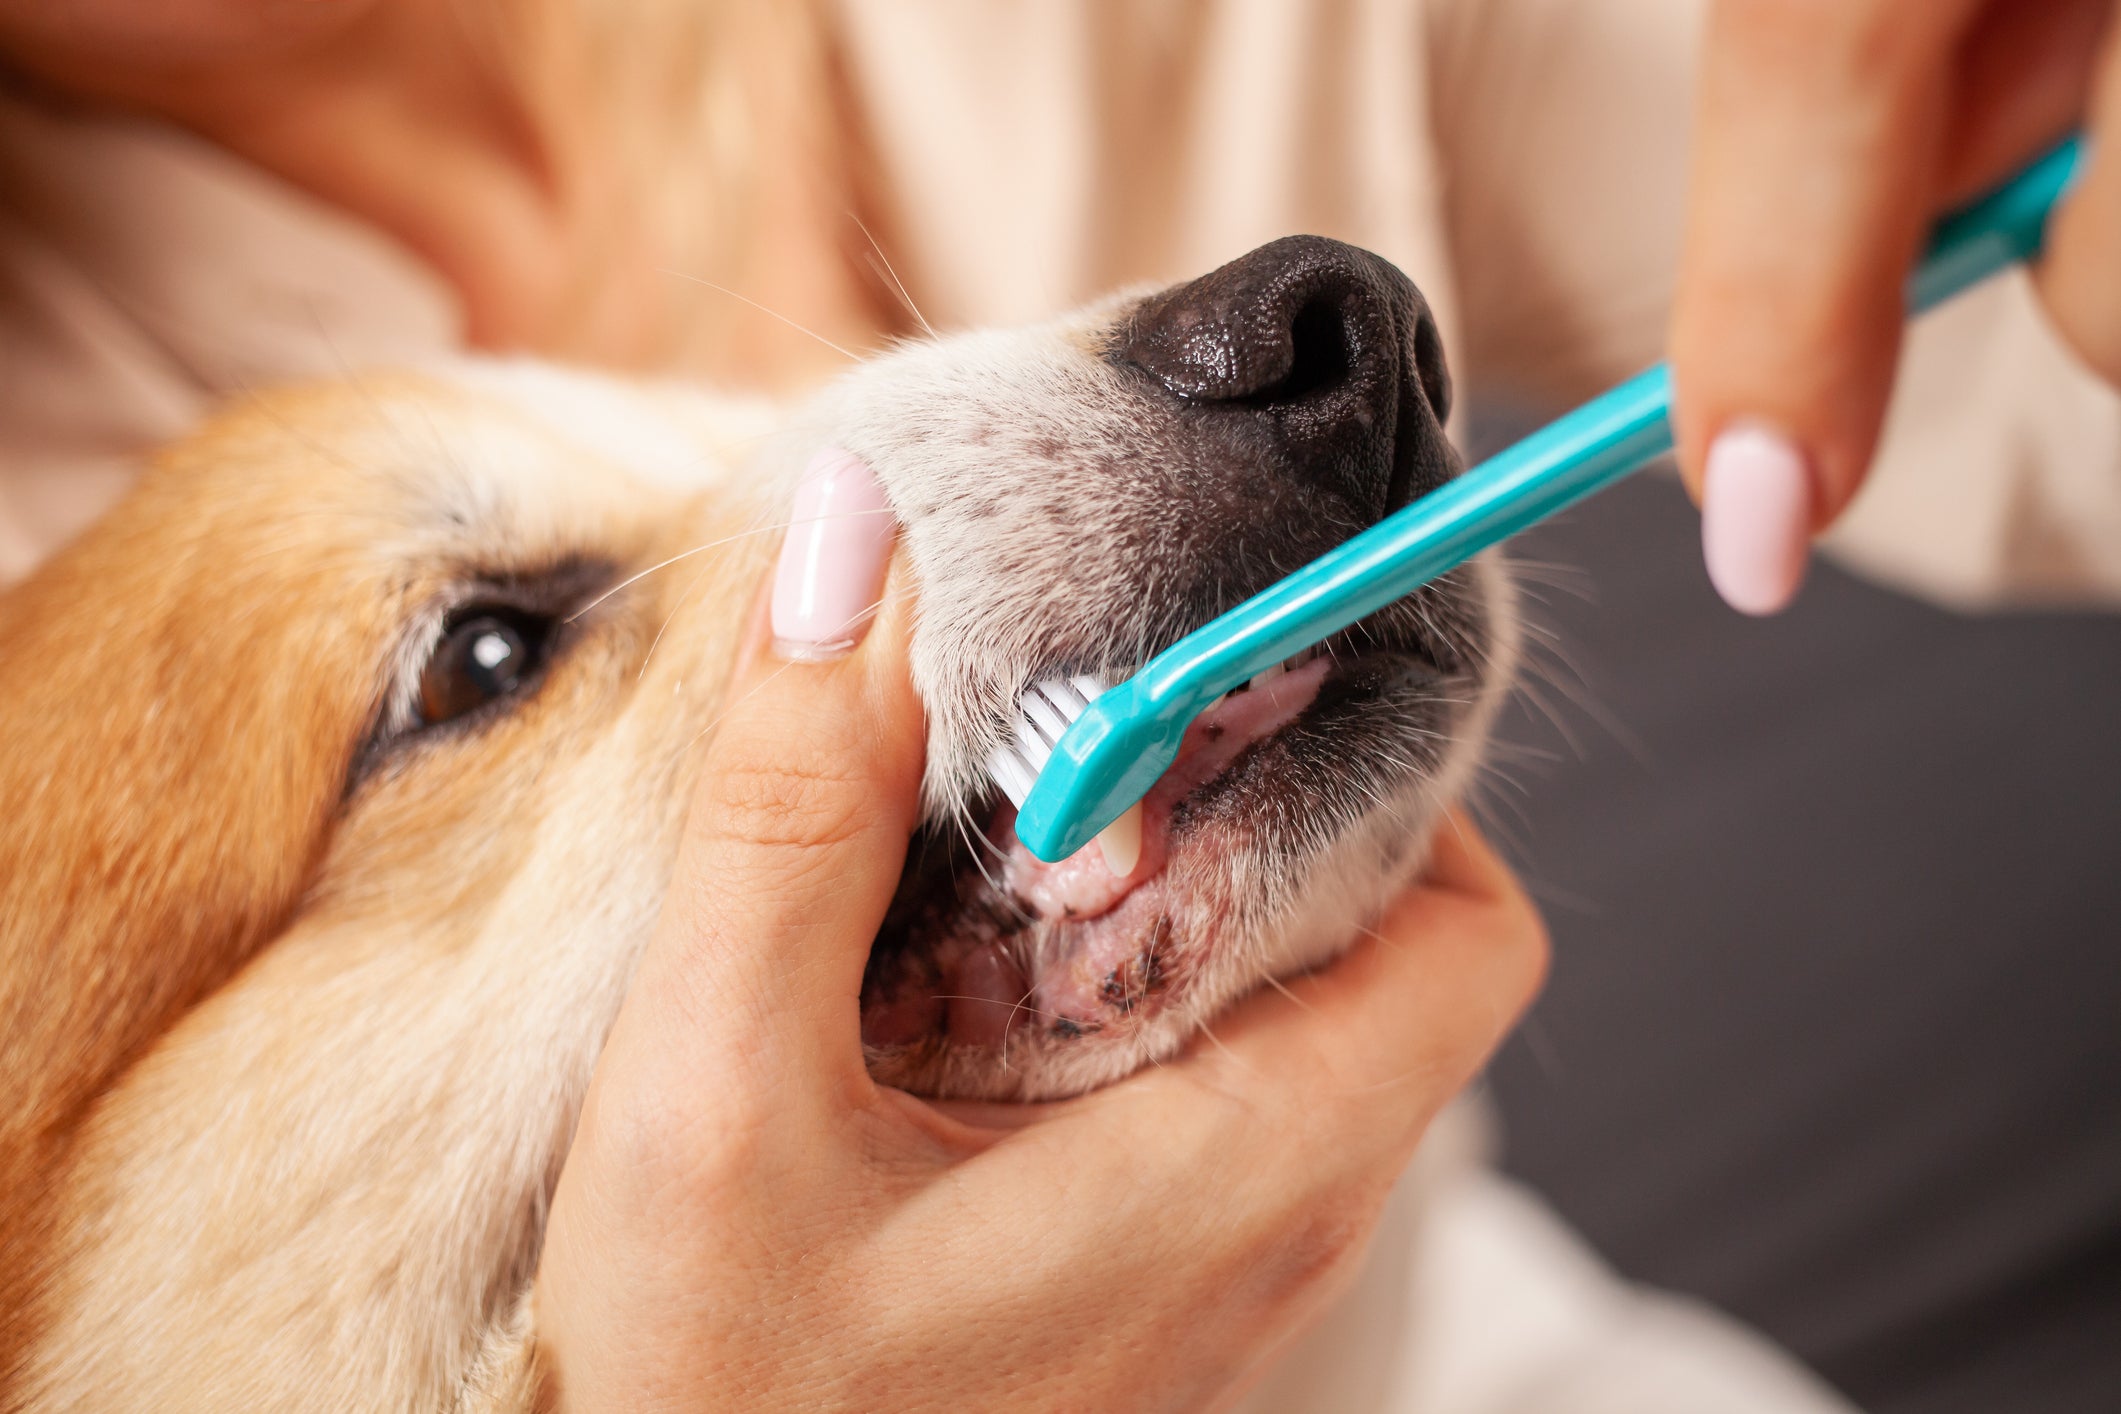 Tutora escovando os dentes de cãozinho com escova azul claro